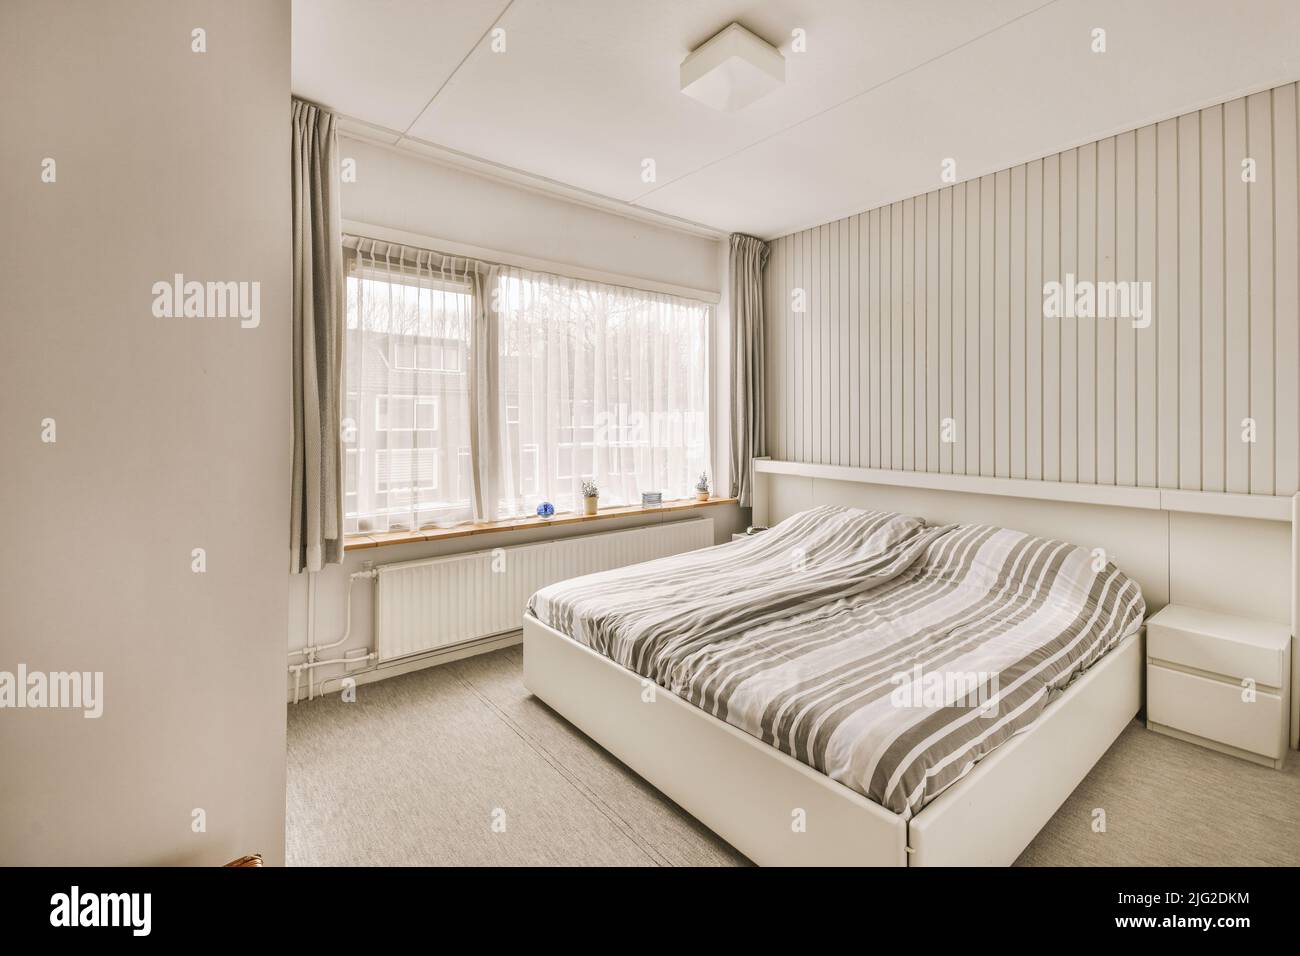 Letto moderno con comodo materasso situato vicino al pouf del comodino e guardaroba in una spaziosa camera da letto Foto Stock